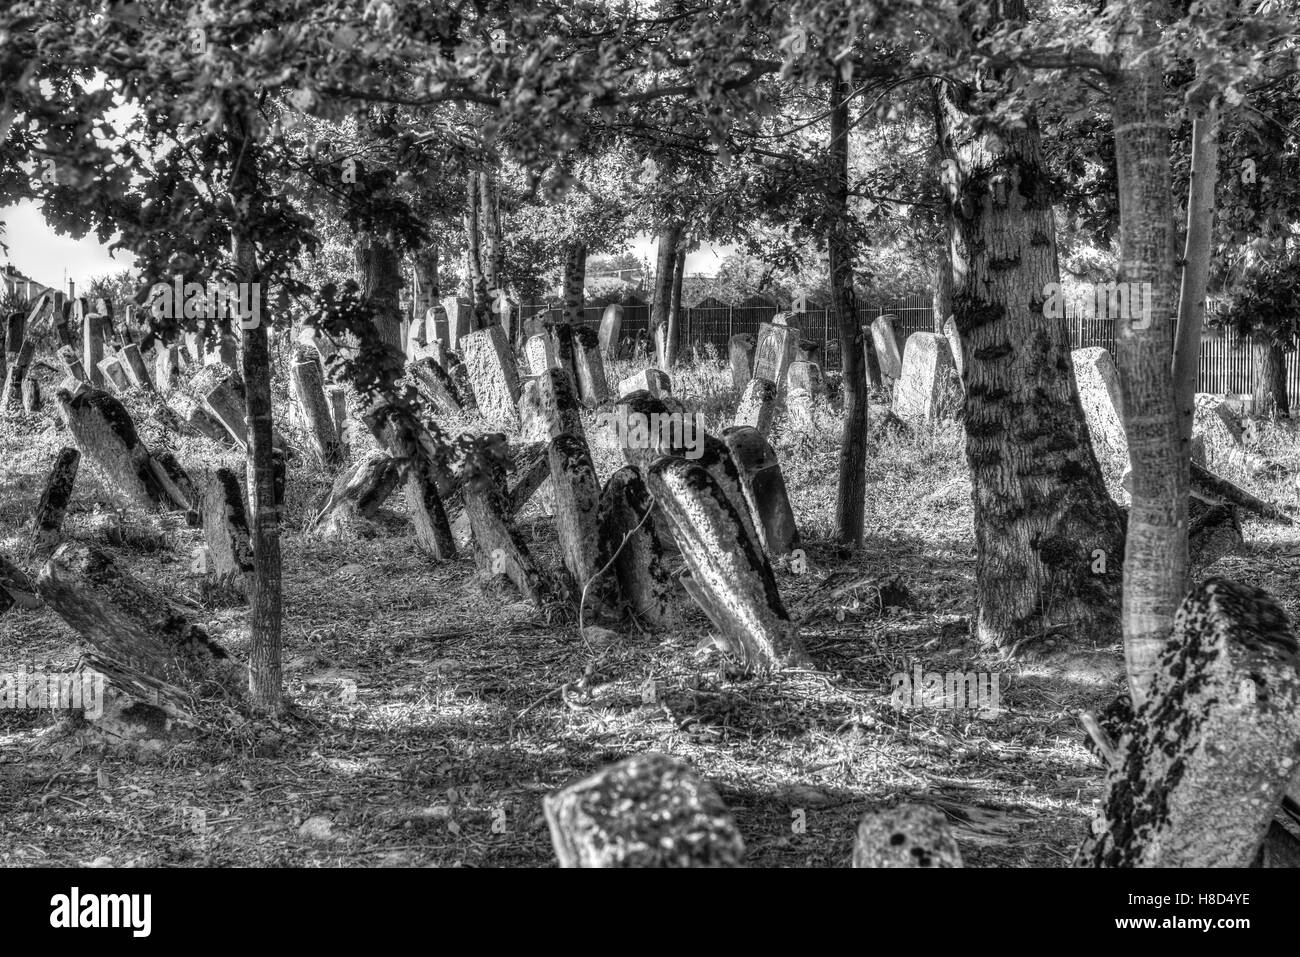 Antiguo cementerio judío, abandonado y olvidado, el cementerio judío, viejos árboles cubren las lápidas judías Foto de stock